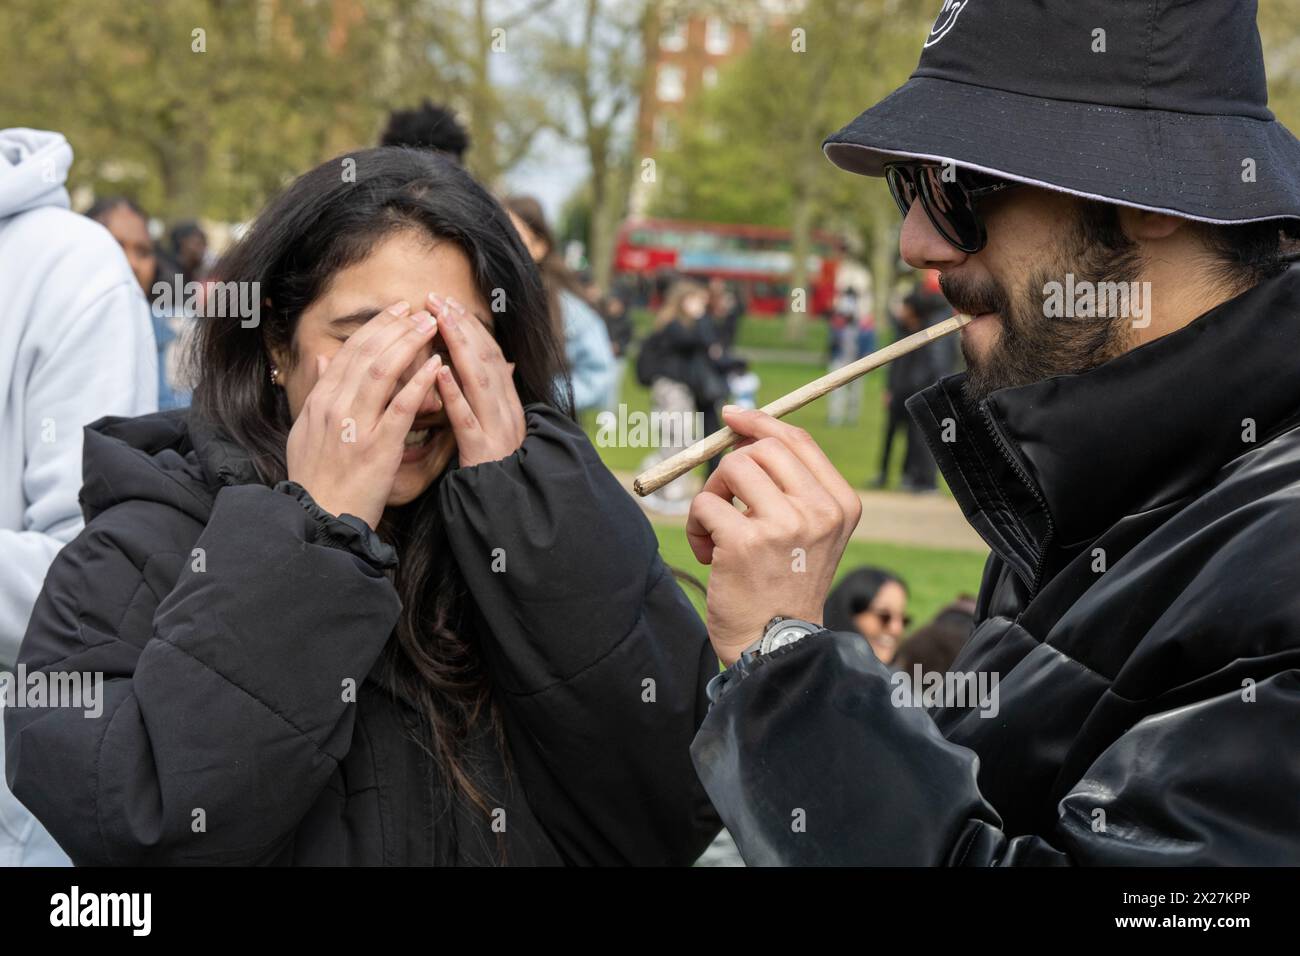 Die jährliche „420“-Kundgebung in London Großbritannien im Hyde Park fordert, dass die illegale Droge Cannabis entkriminalisiert wird. Quelle: Ian Davidson/Alamy Live News Stockfoto